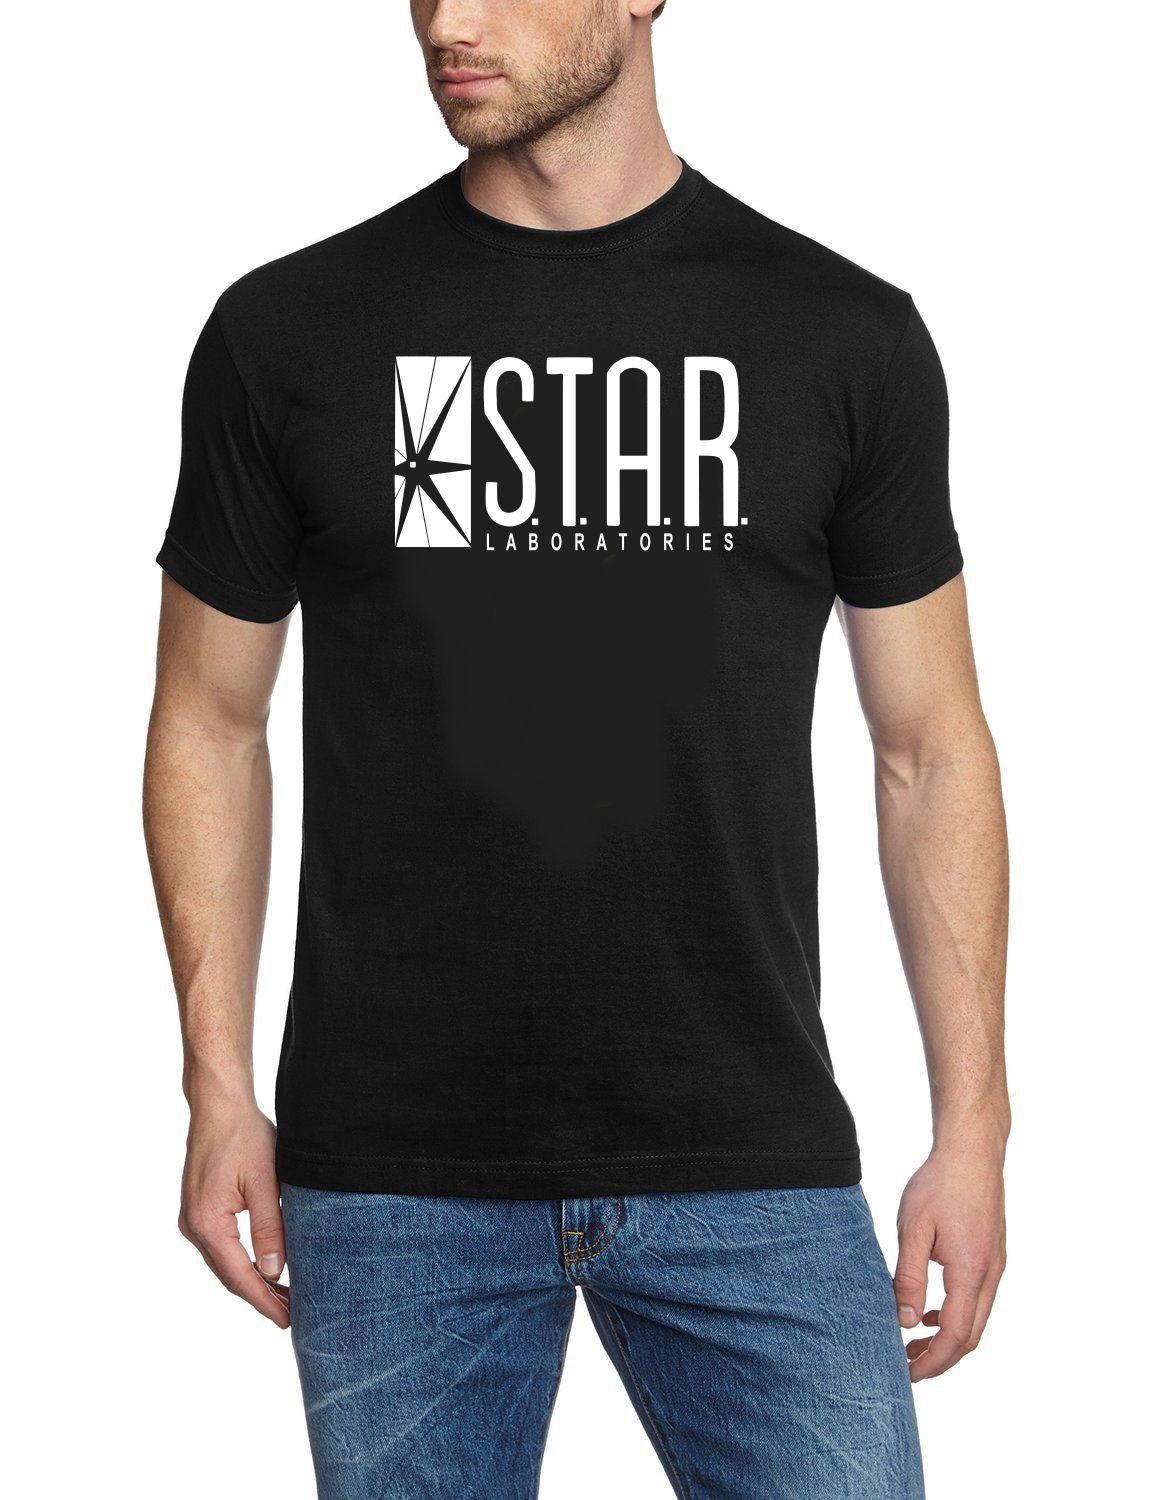 Jugendliche Erwachsene + Print-Shirt XL TV XXL T-Shirt The LABORATORIES STAR S M Schwarz Flash L Gr. Flash